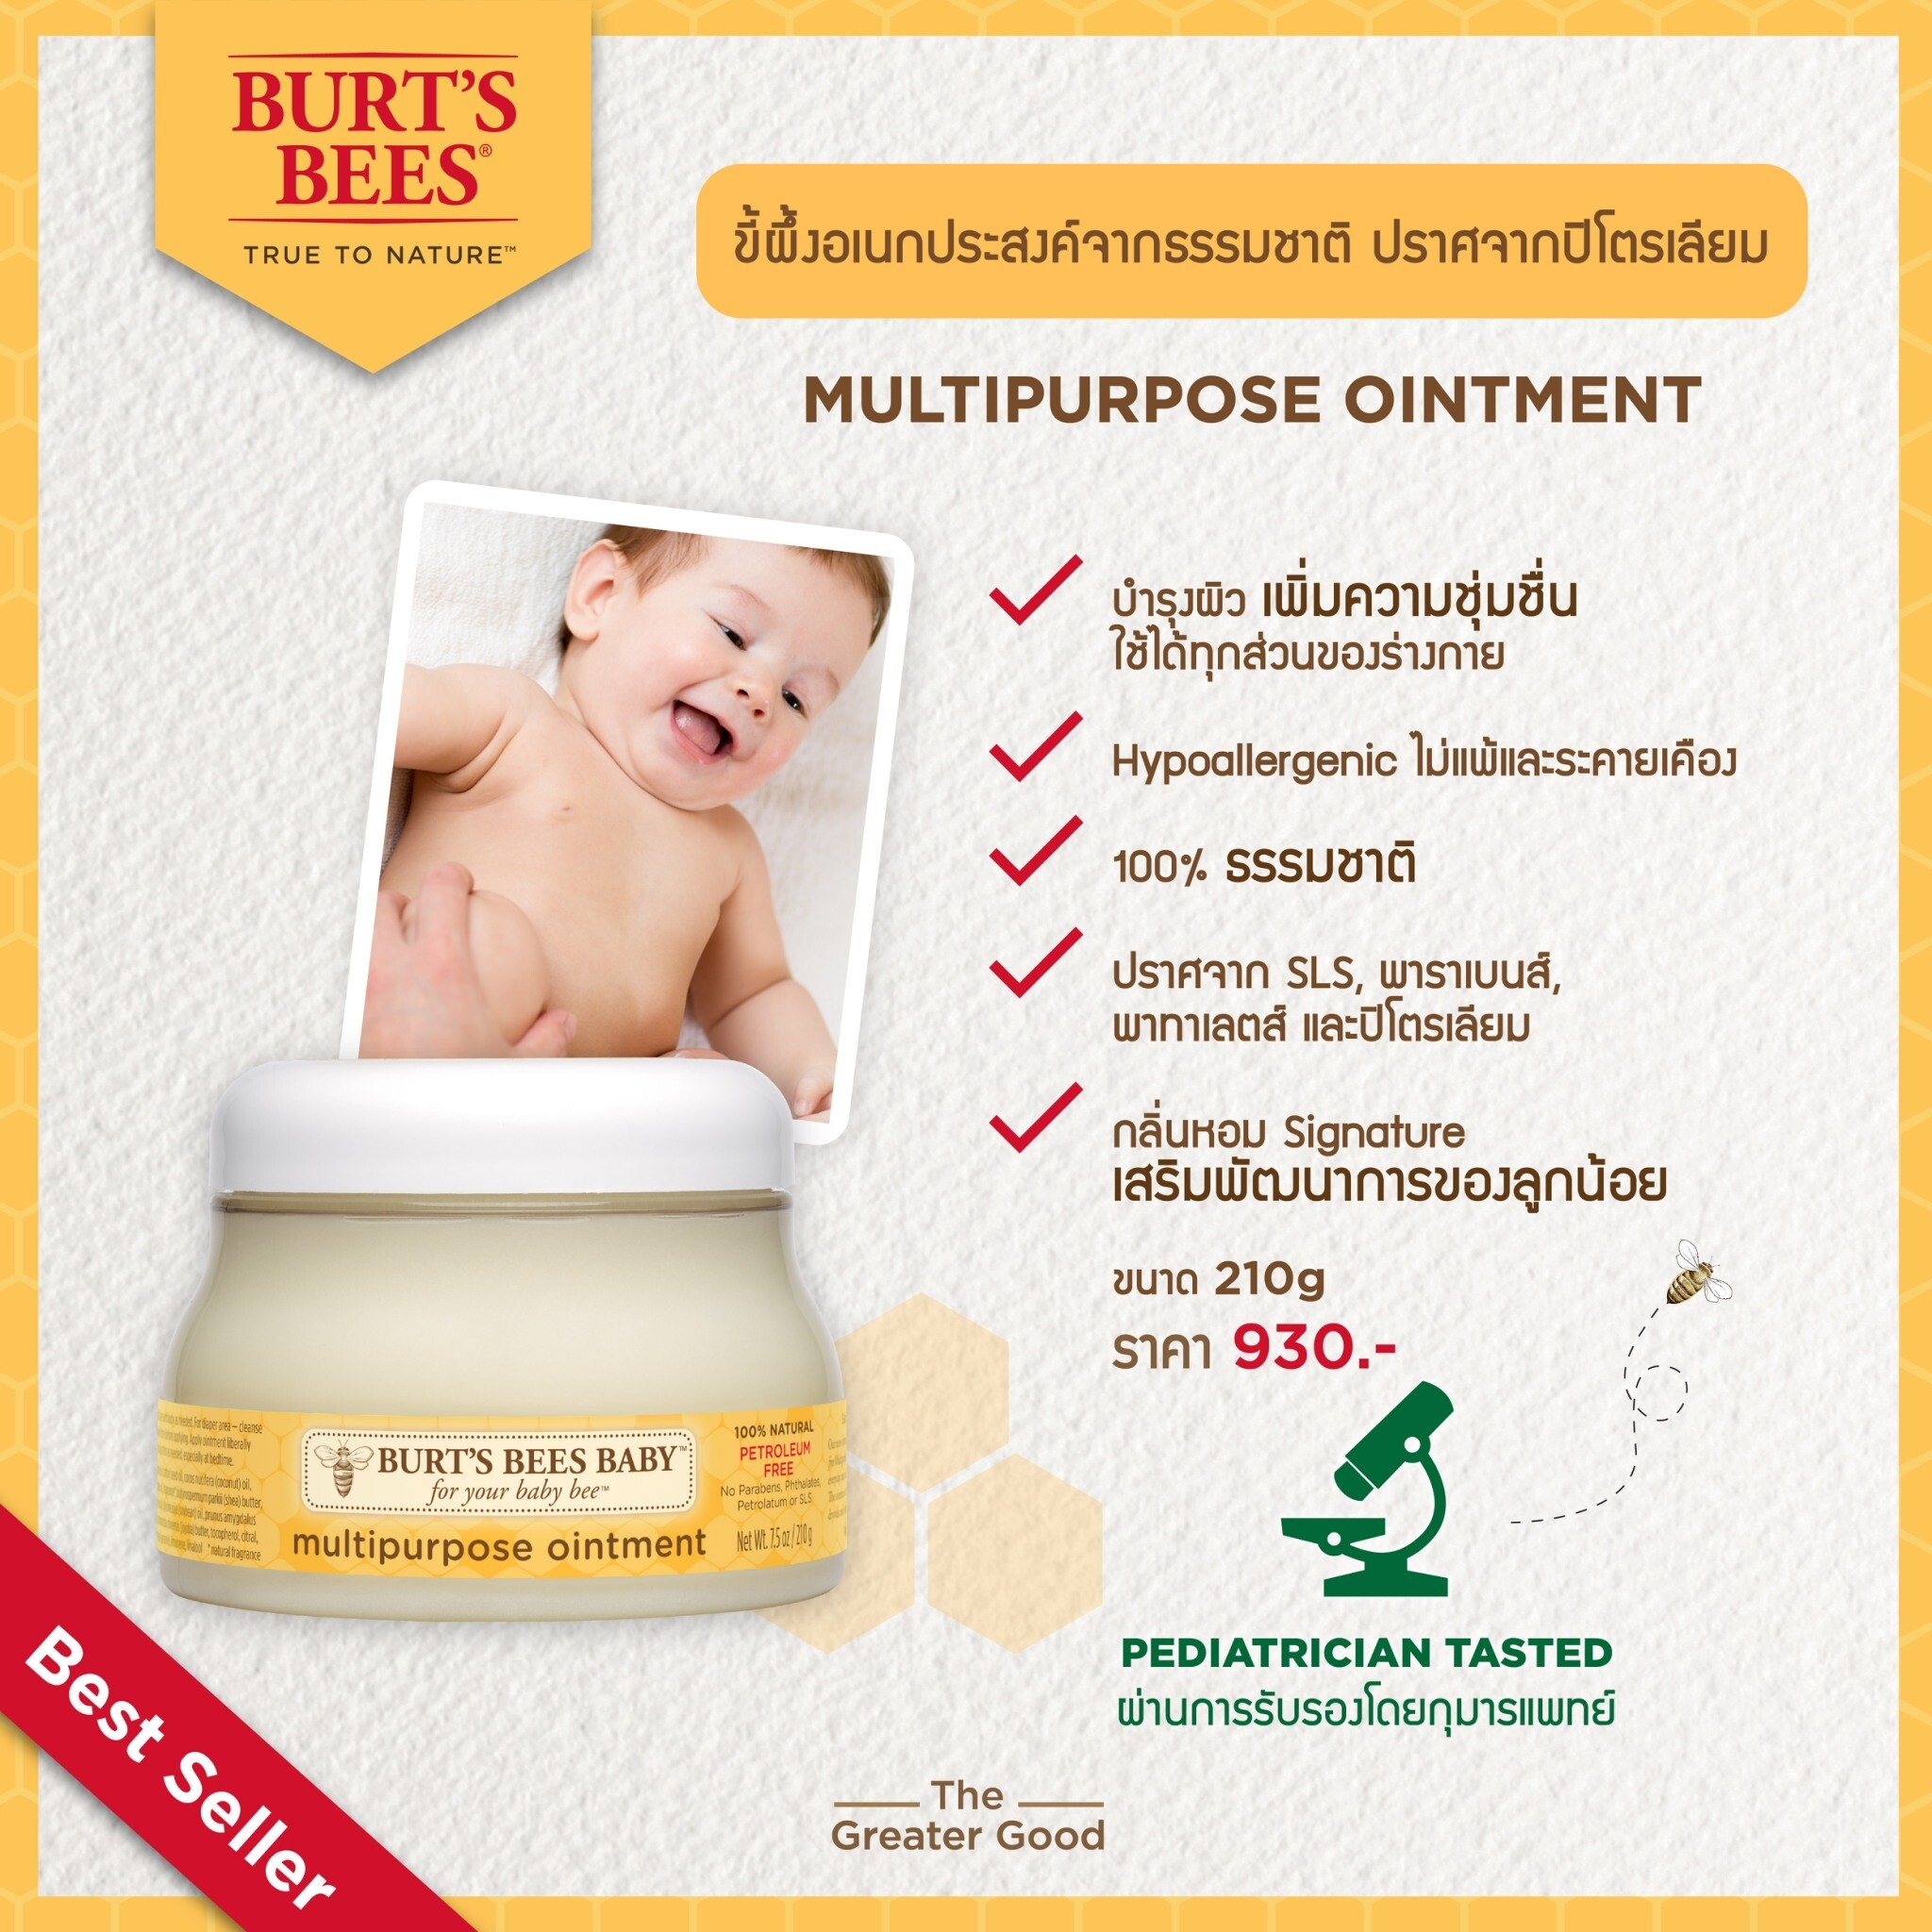 แนะนำ Burt's Bees Baby Bee Petroleum Free Multipurpose Ointment เบิร์ตบีส์ ครีมทาผิวเอนกประสงค์